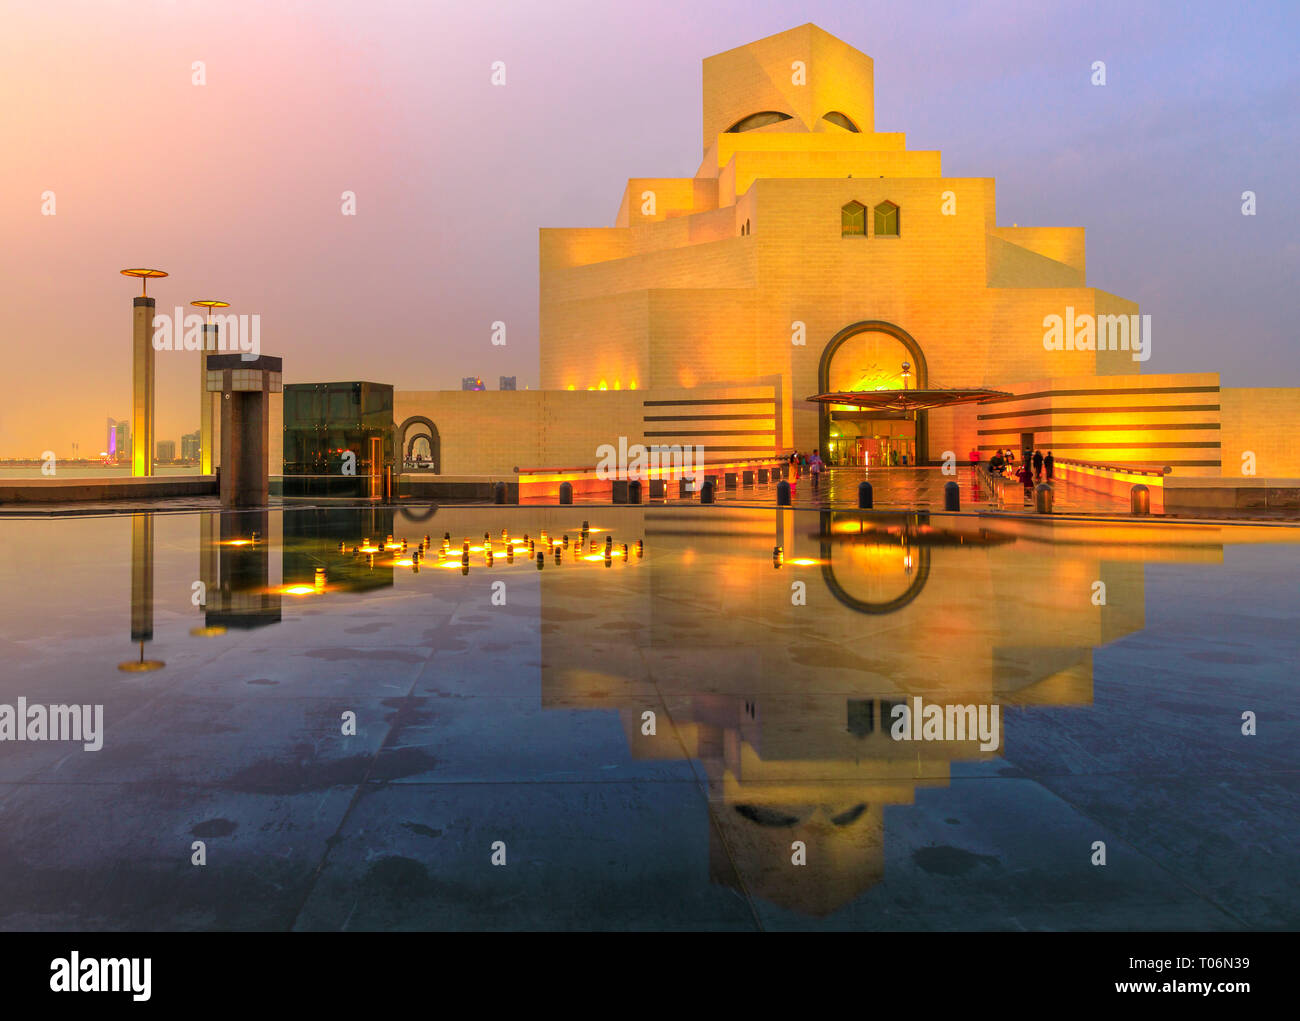 Doha, Katar - Februar 16, 2019: Museum für Islamische Kunst, beliebte Touristenattraktion, entlang der Corniche Nachdenken über Brunnen Wasser in der Dämmerung Himmel Stockfoto